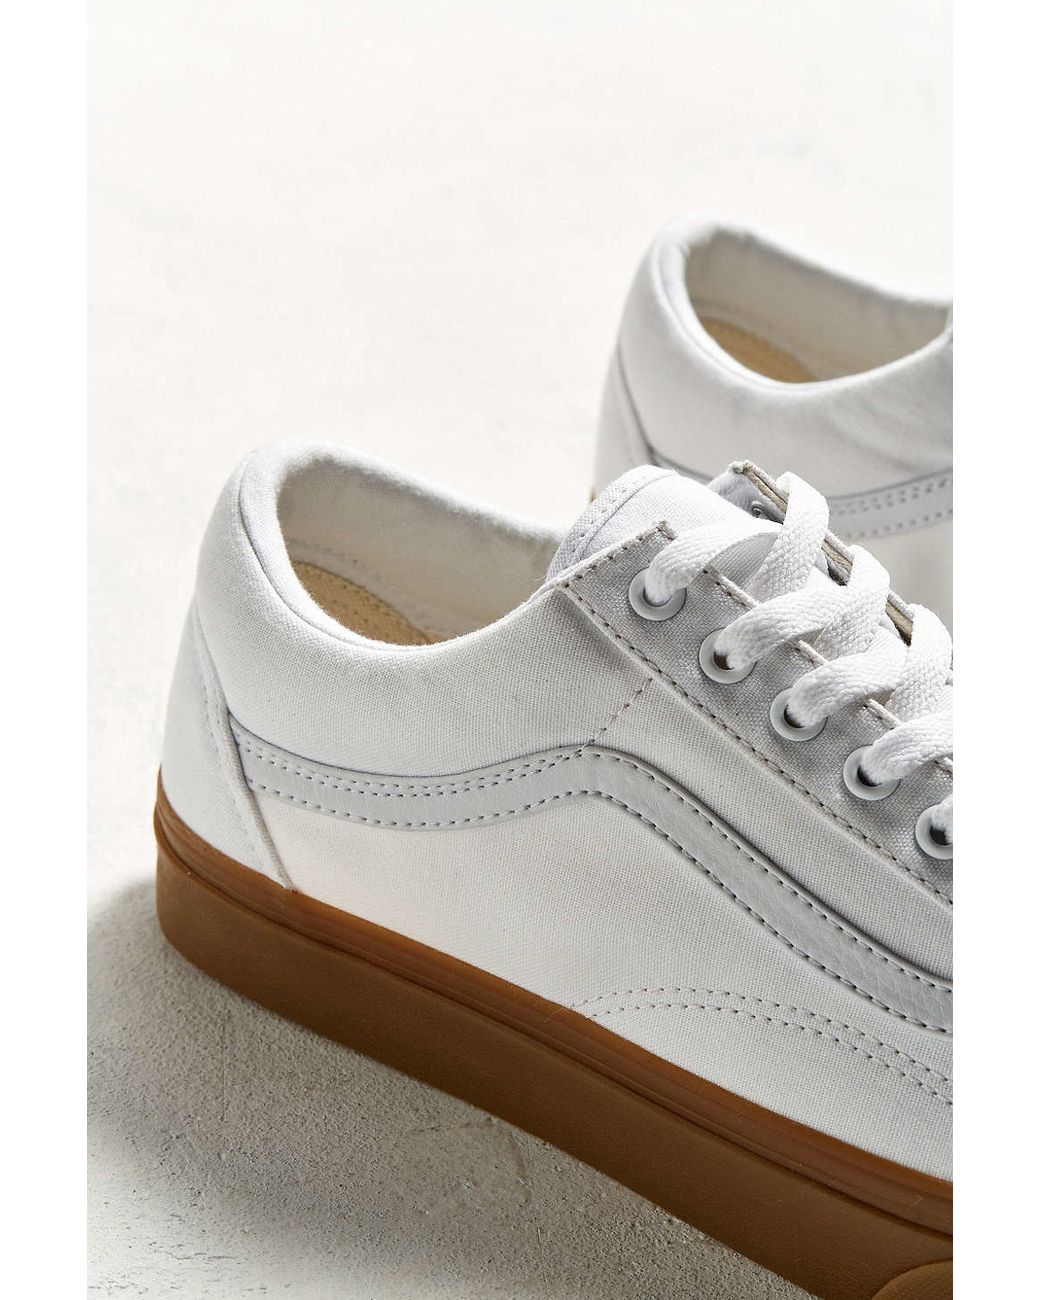 Vans Old Skool Gum Sole Sneaker In White | Lyst